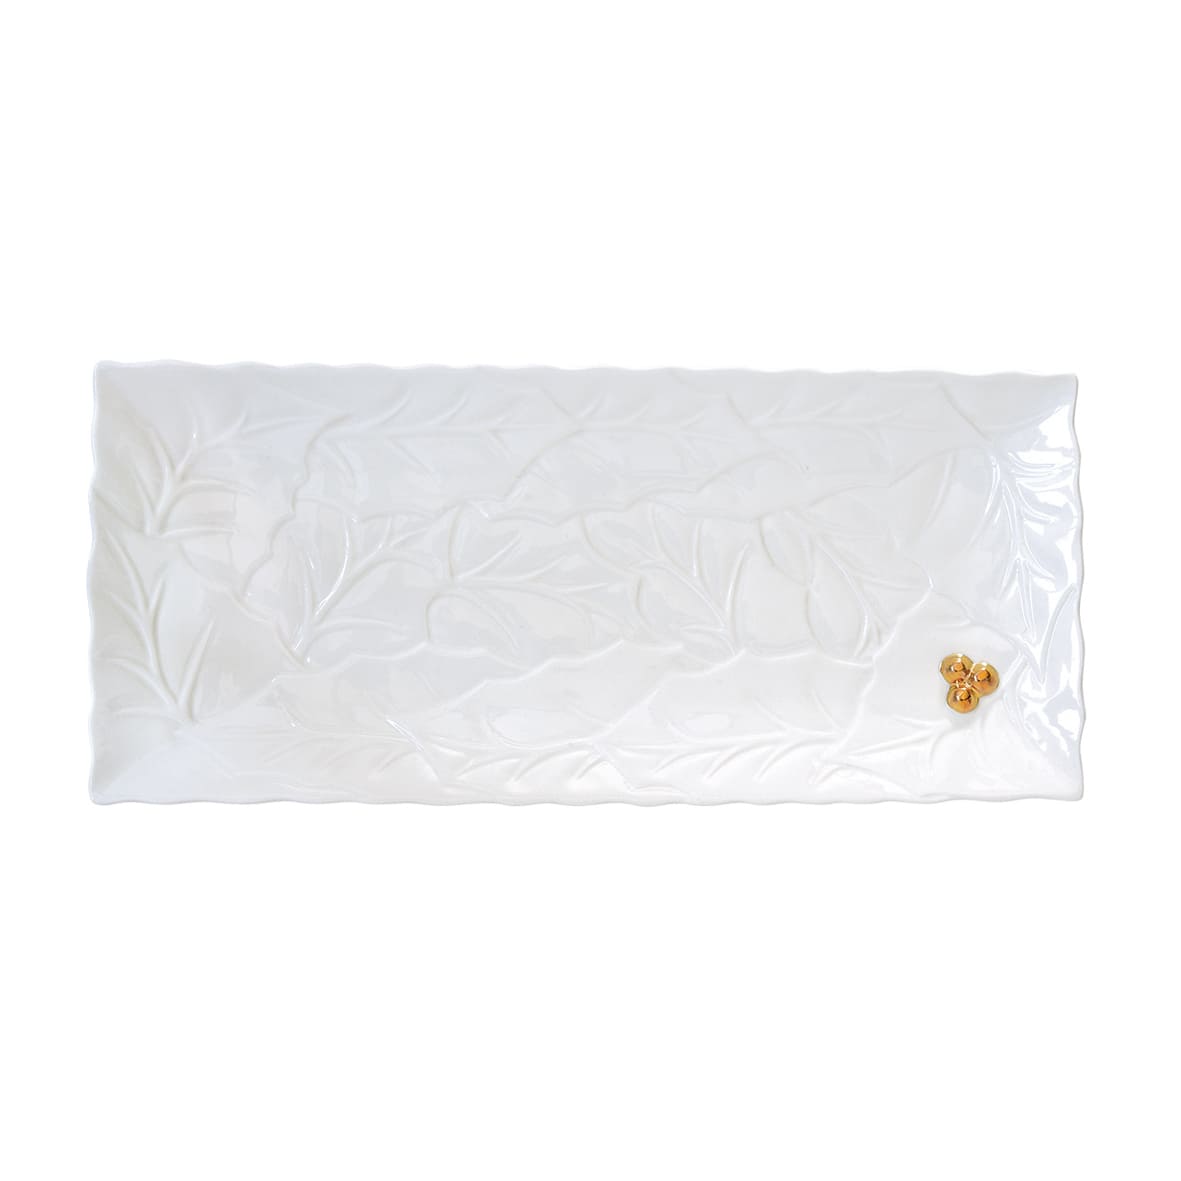 Porselen Servis Tabağı 37,0x16,5 cm - Beyaz